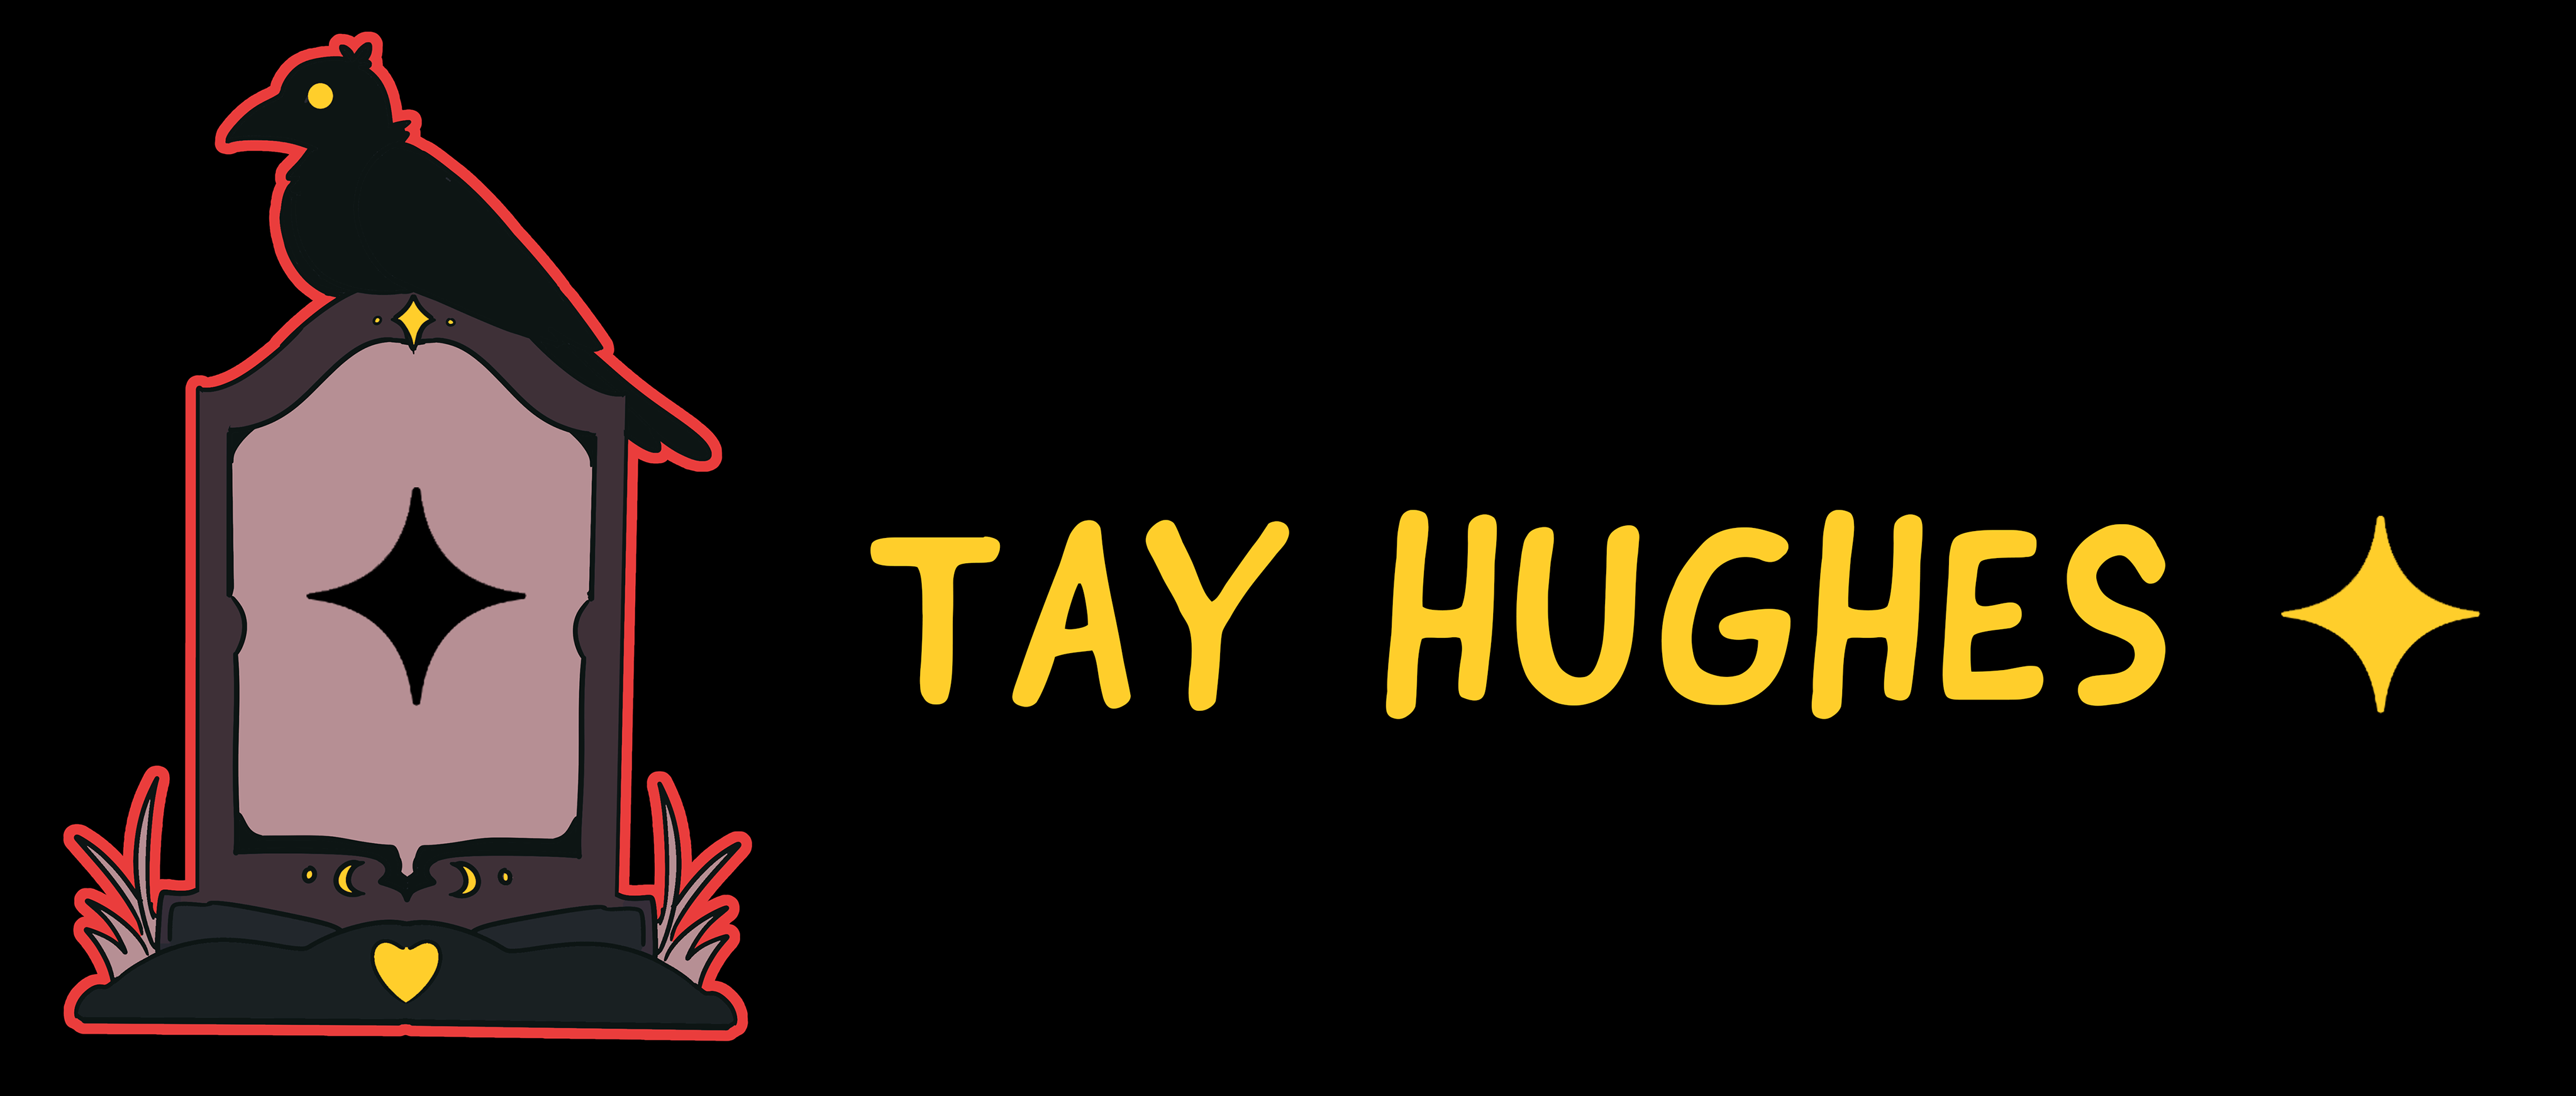 Tay Hughes